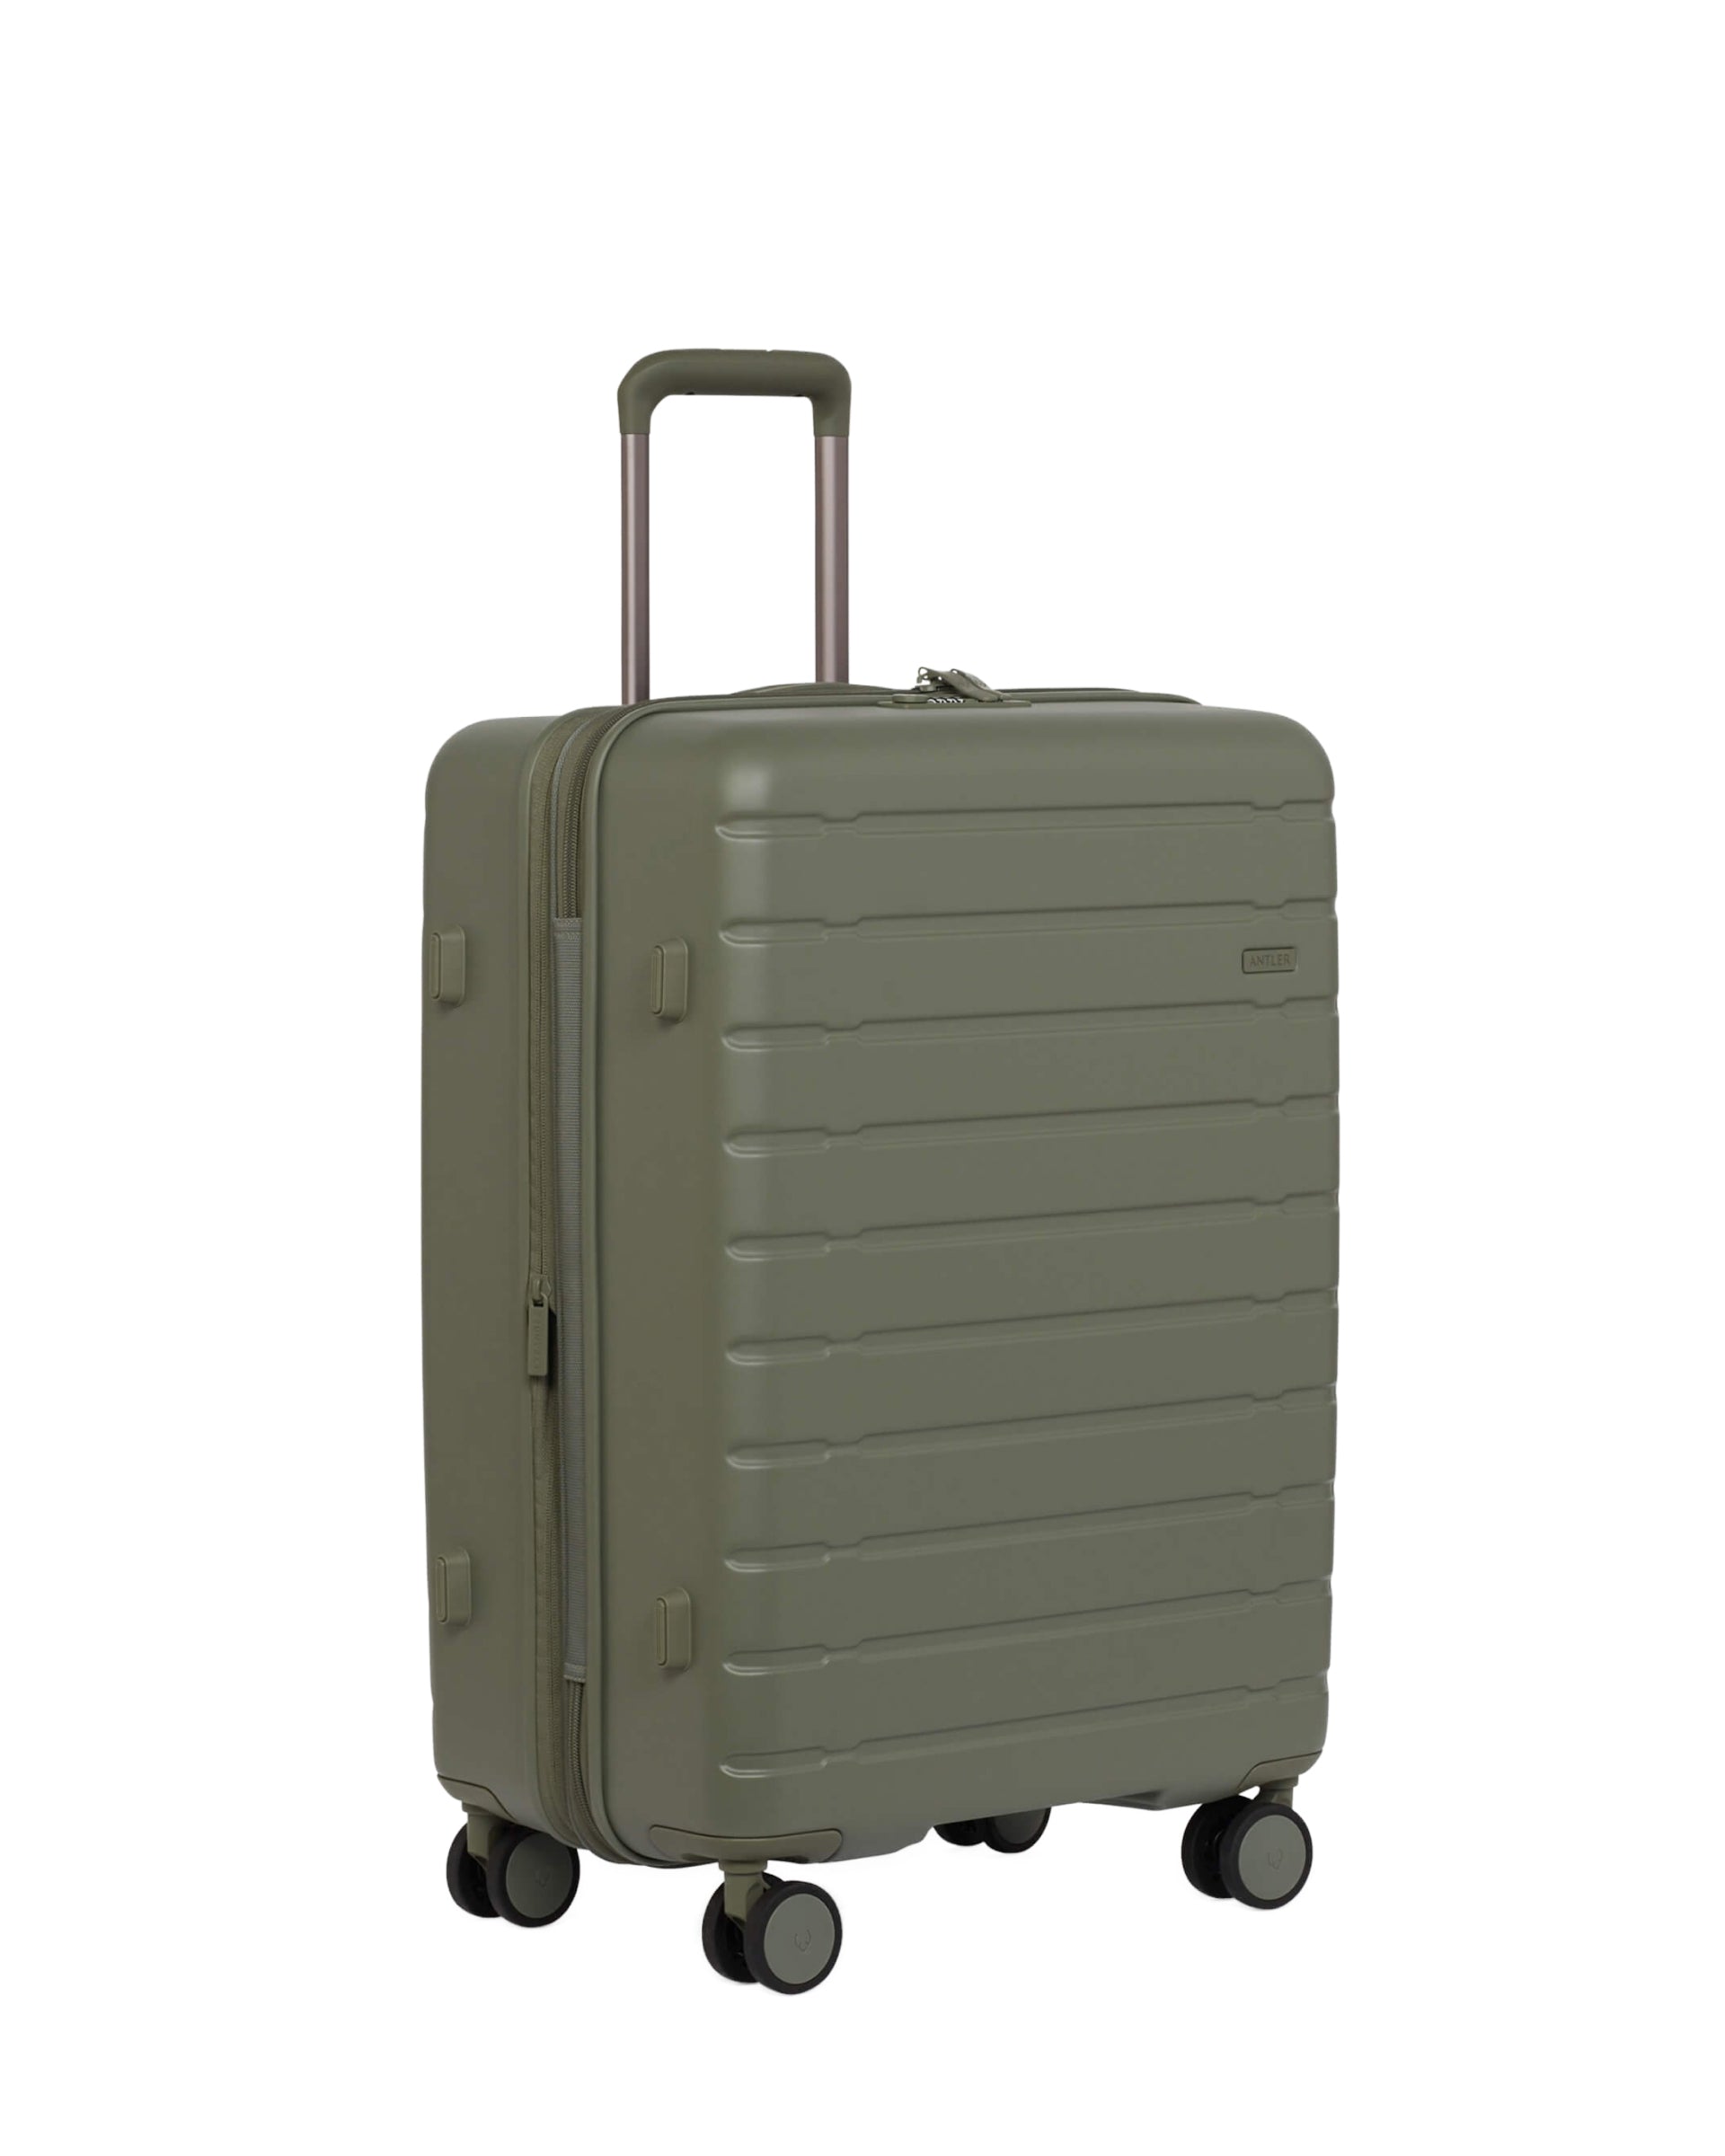 View Antler Stamford 20 Medium Suitcase In Field Green Size 295cm x 48cm x 683cm information